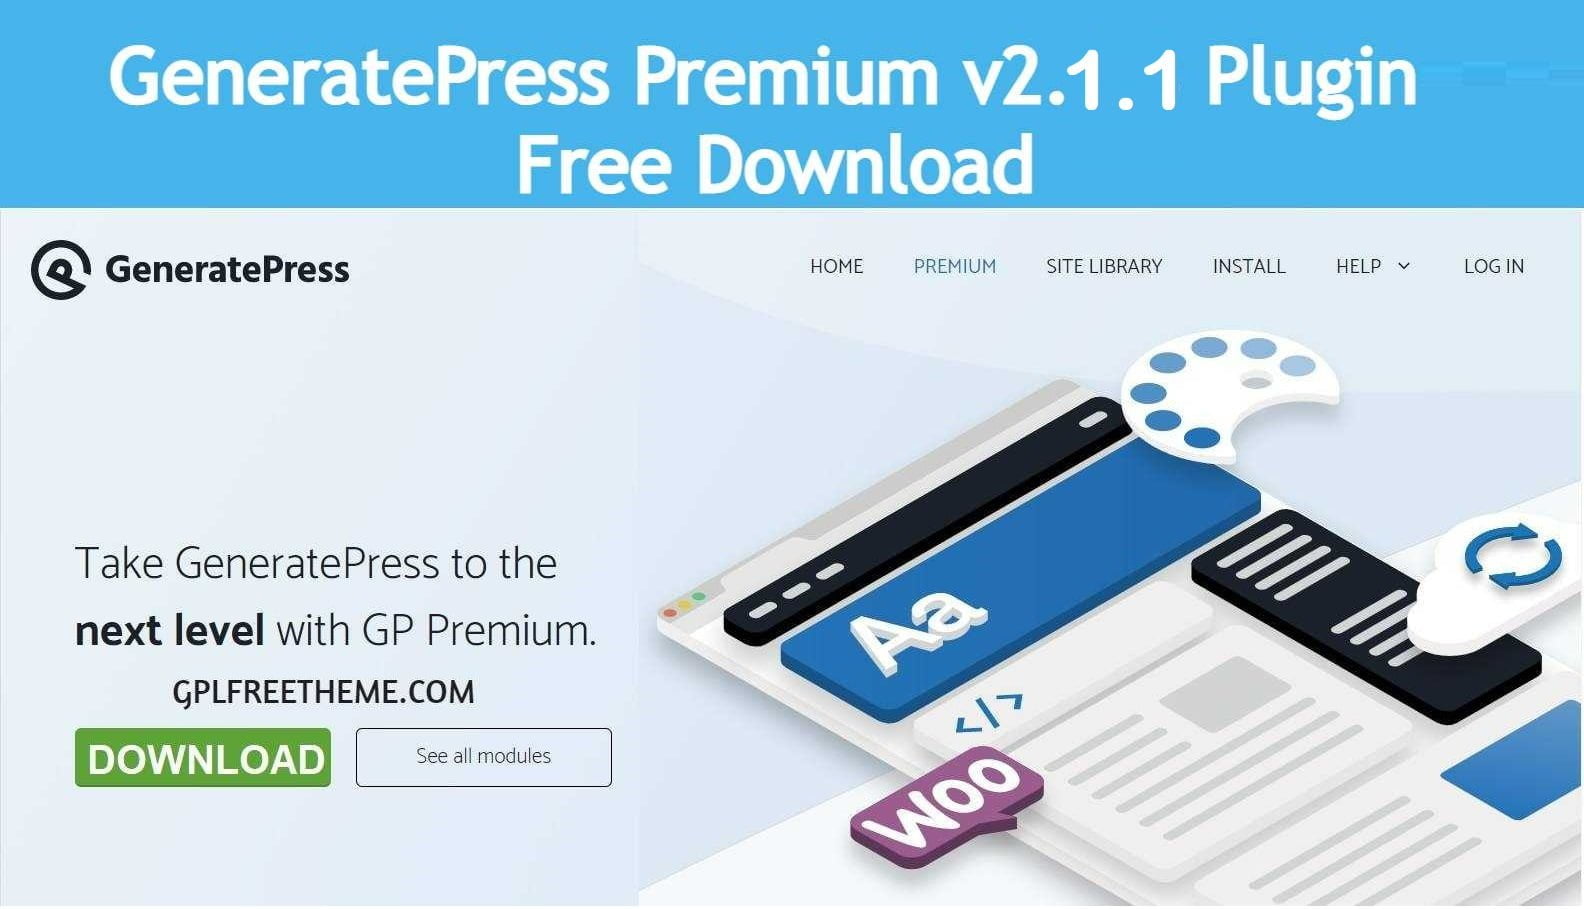 GP Premium v2.1.1 - Plugin Free Download [Activated]